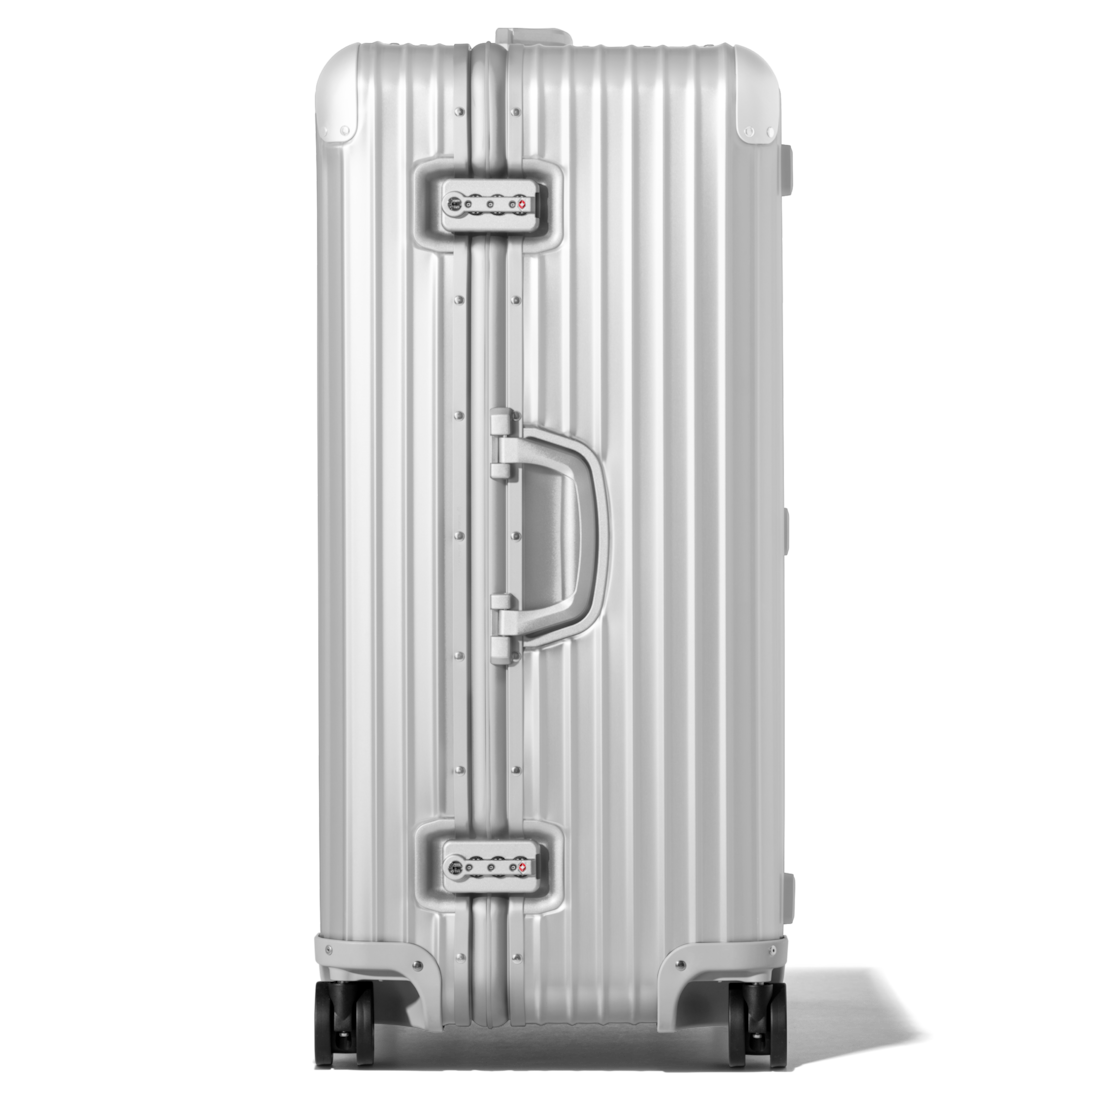 Original Trunk Large Aluminum Suitcase, Silver